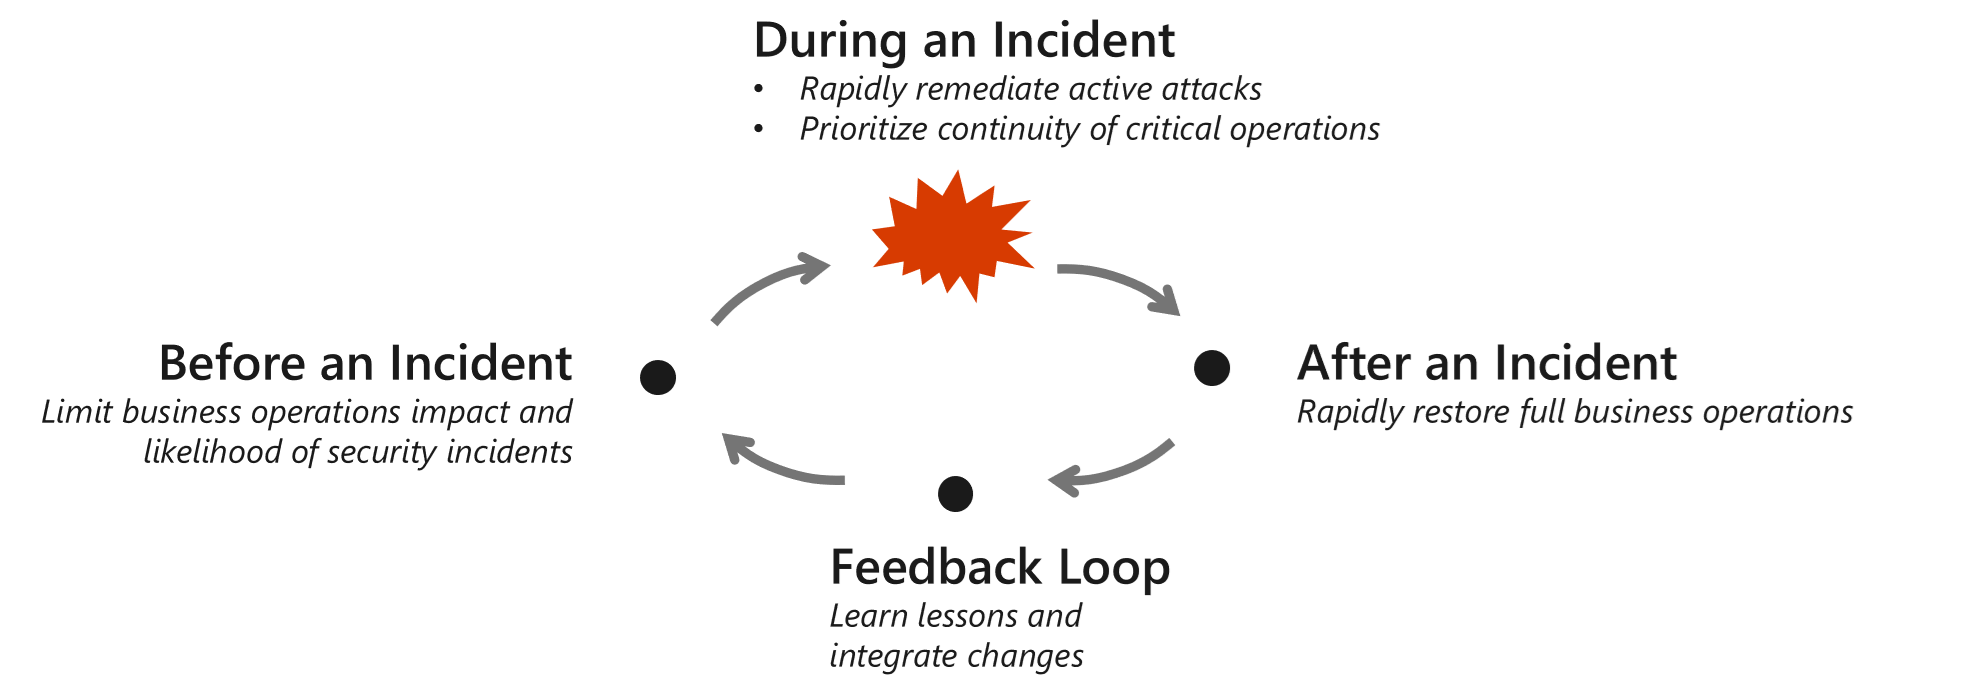 インシデントのライフ サイクルの 4 つの段階 (インシデントの前、最中、後) と、得られた教訓を示すビジュアル チャート。